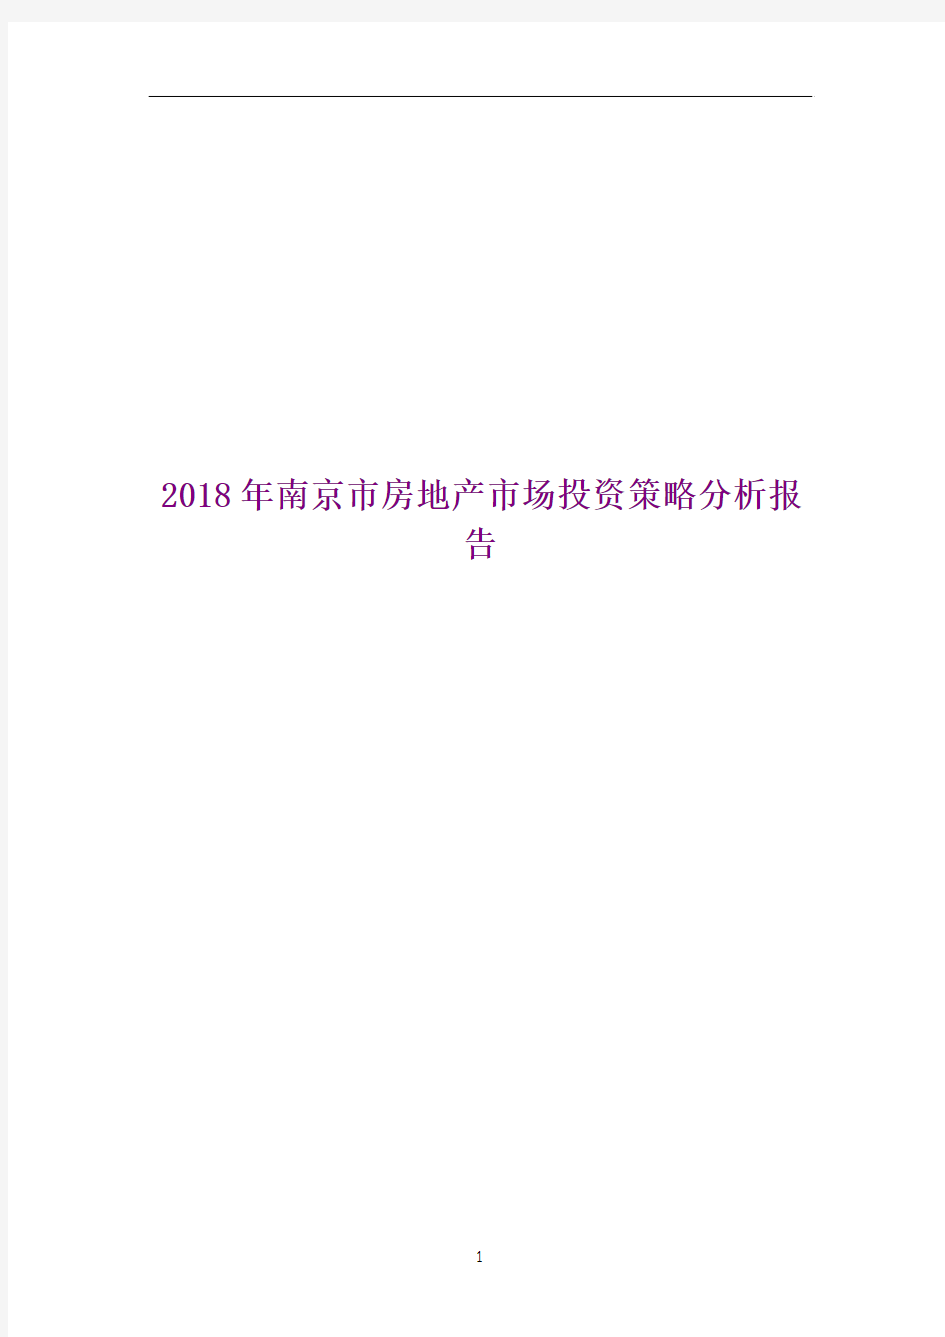 2018年南京市房地产市场投资策略分析报告